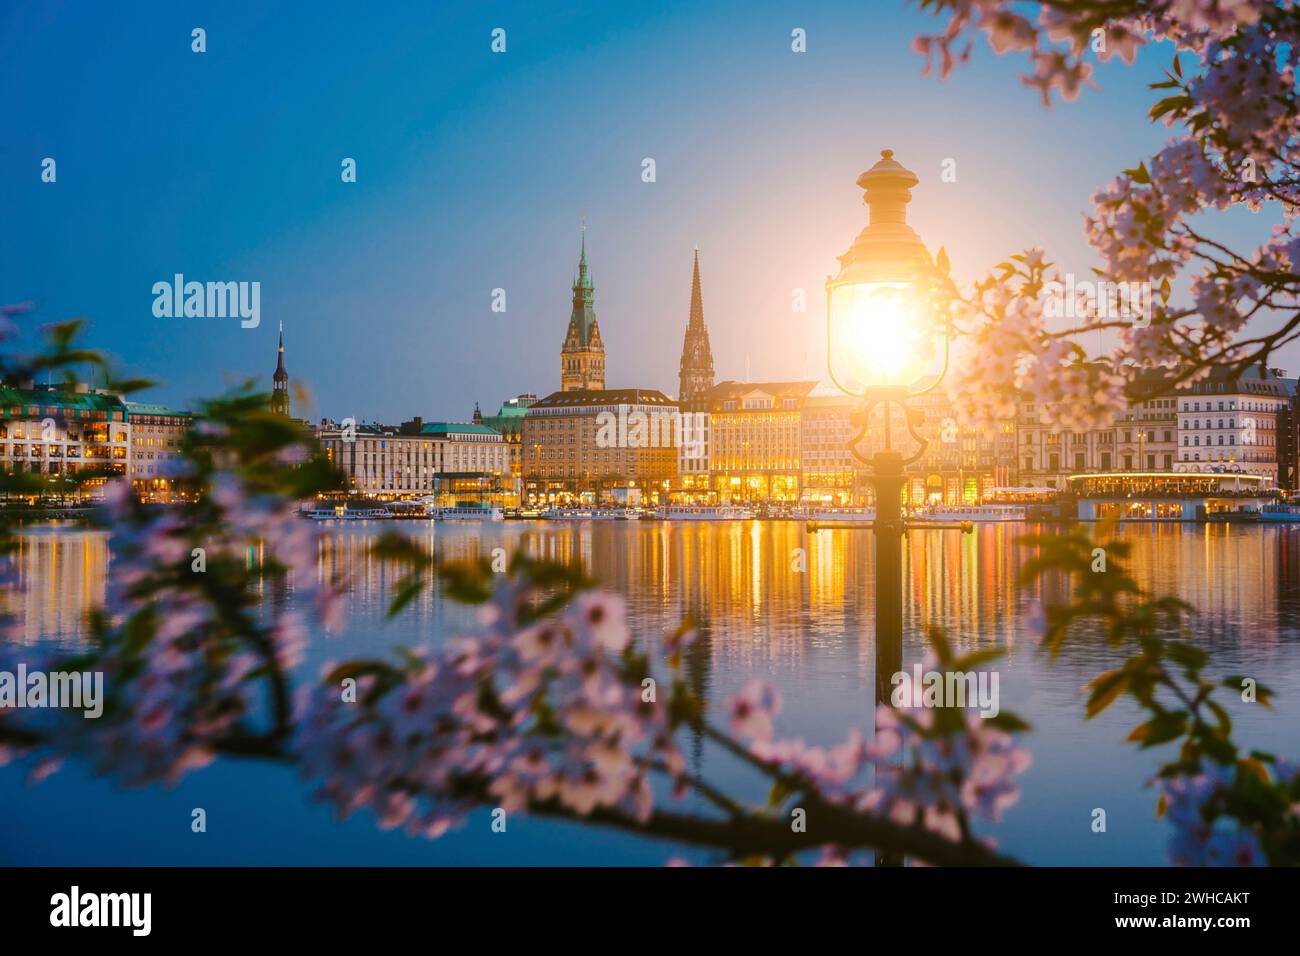 Brennt Laterne zwischen Kirschblüten auf der ruhigen und schönen Alster und dem Hamburger Rathaus - Rathaus im Frühling bei Abenddämmerung kurz nach goldener Stunde. Panorama. Stockfoto